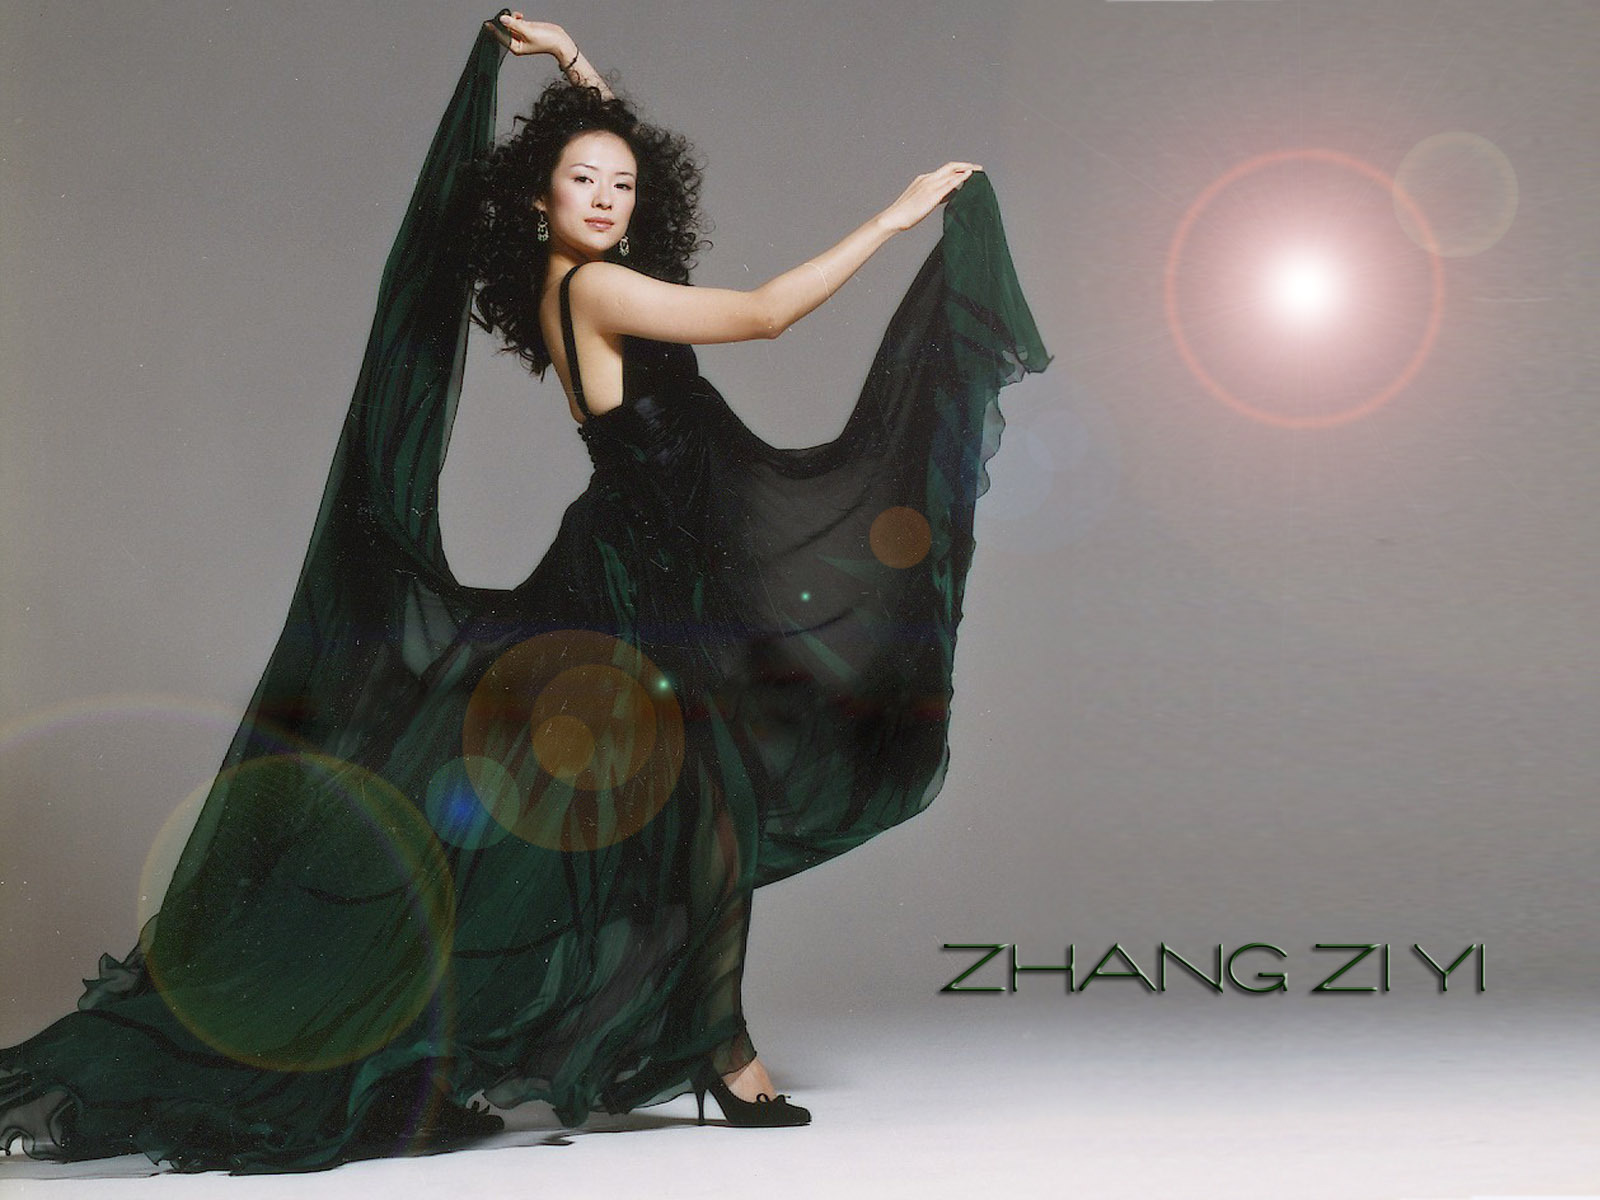 Zhang Ziyi - Zhang Ziyi Wallpaper (20732106) - Fanpop